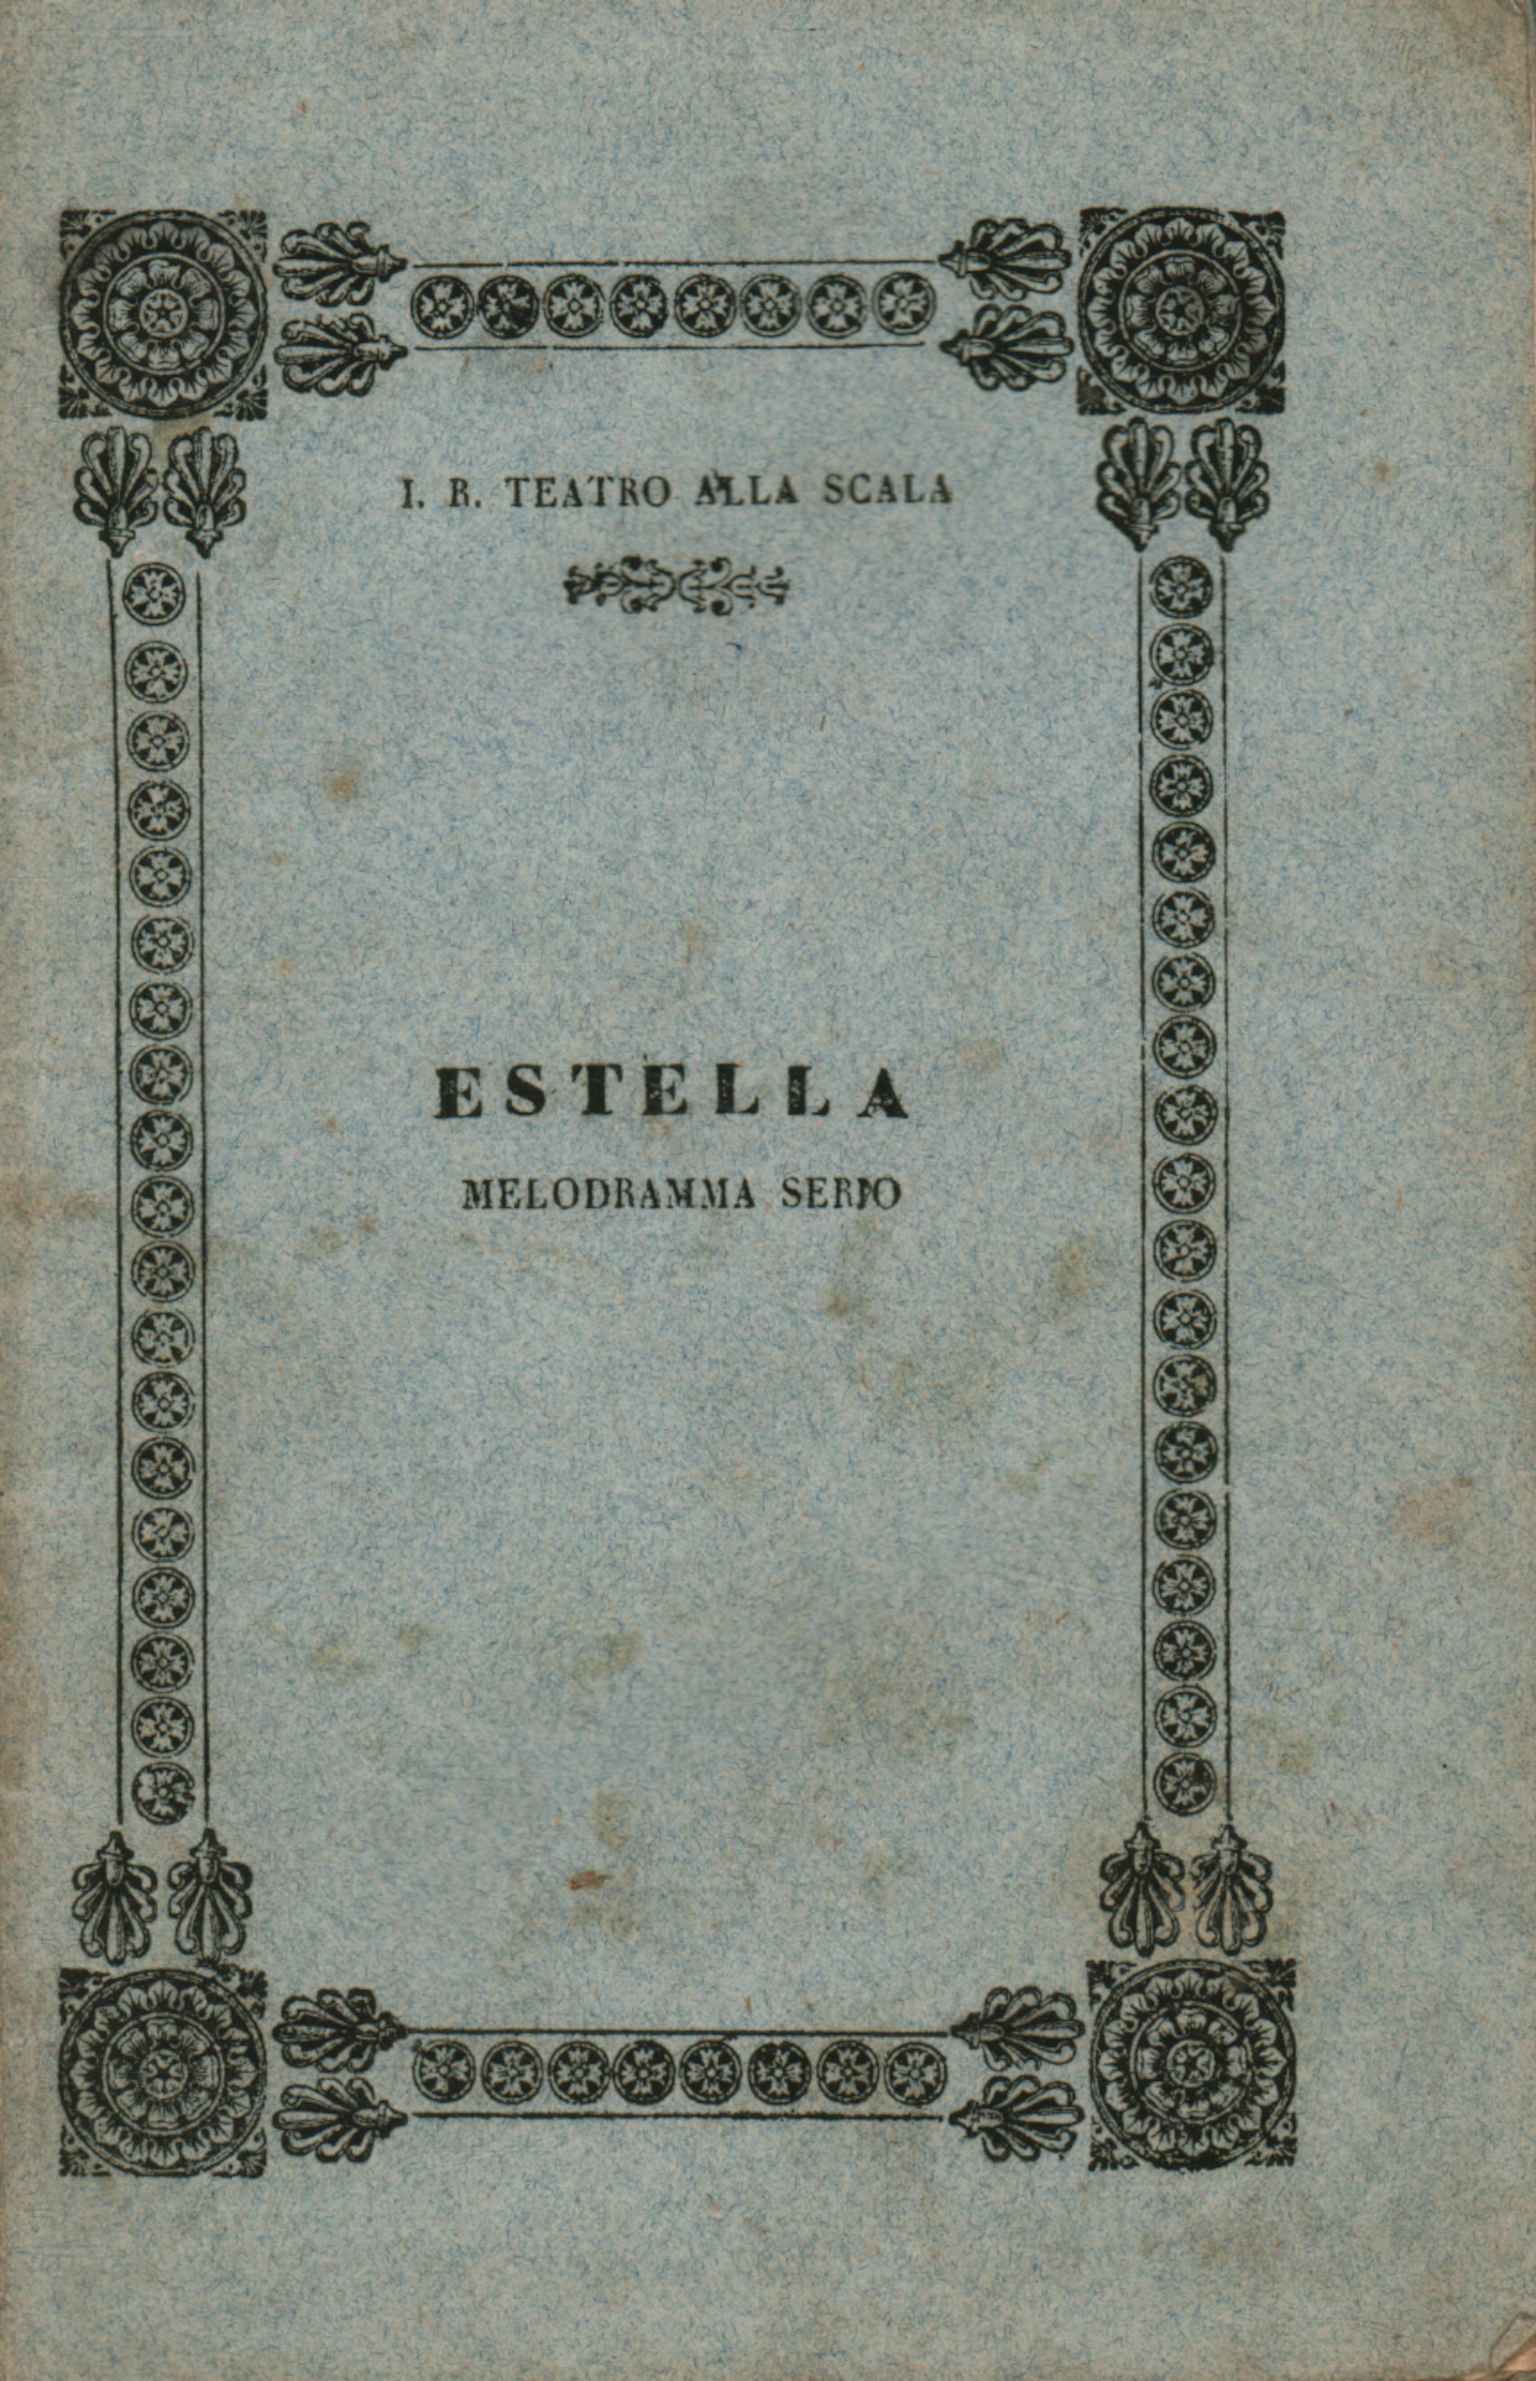 Estella Un mélodrame sérieux à jouer